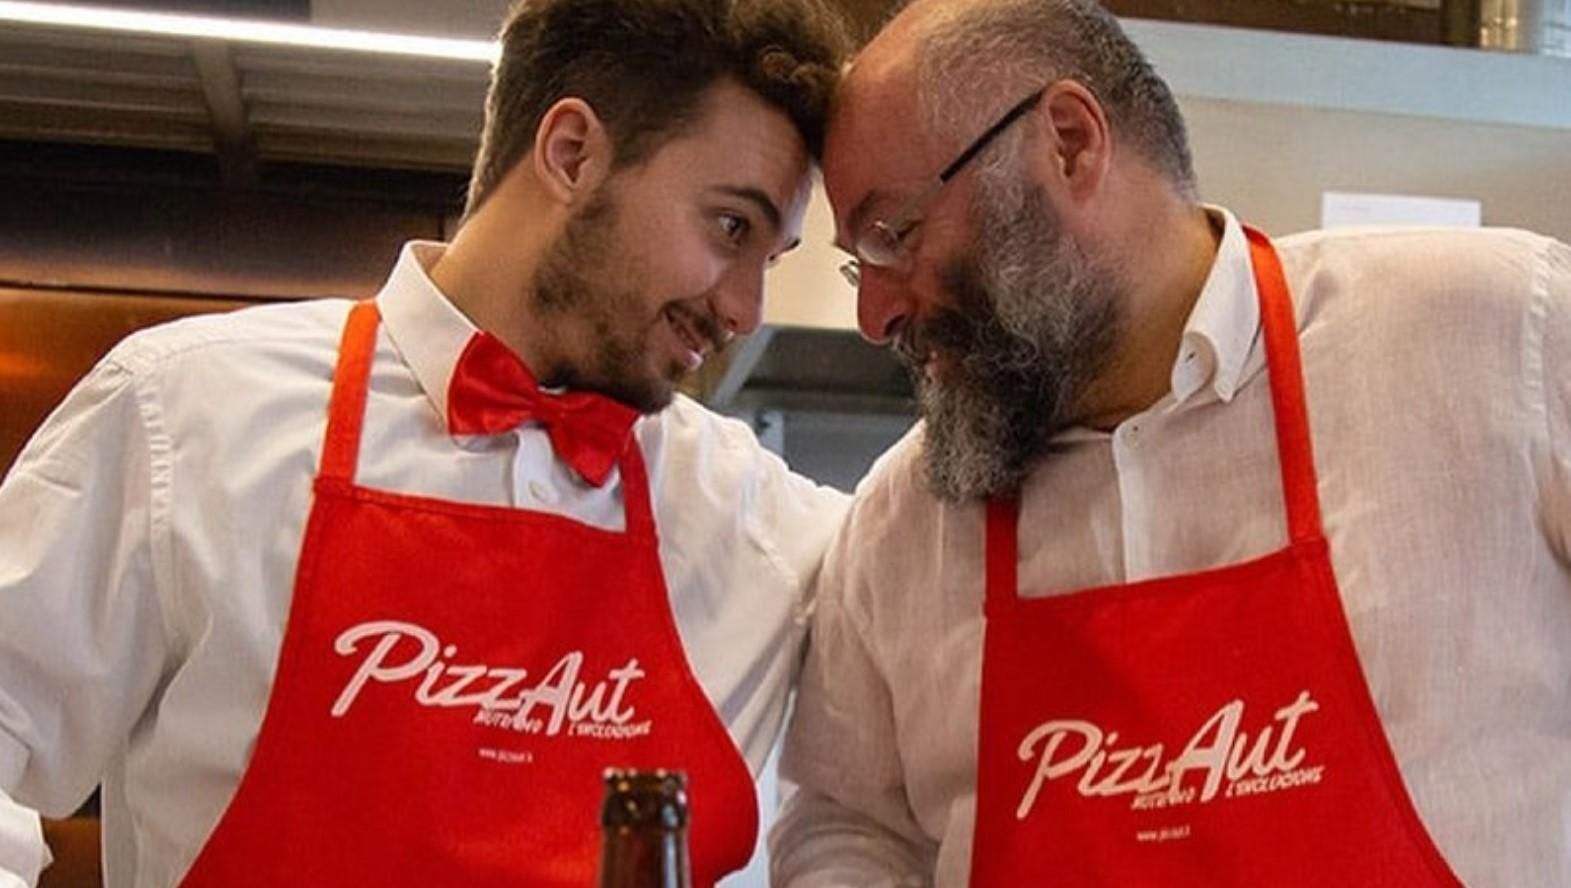 У Мілані відкрили ресторан PizzAut, який привернув увагу своїм персоналом